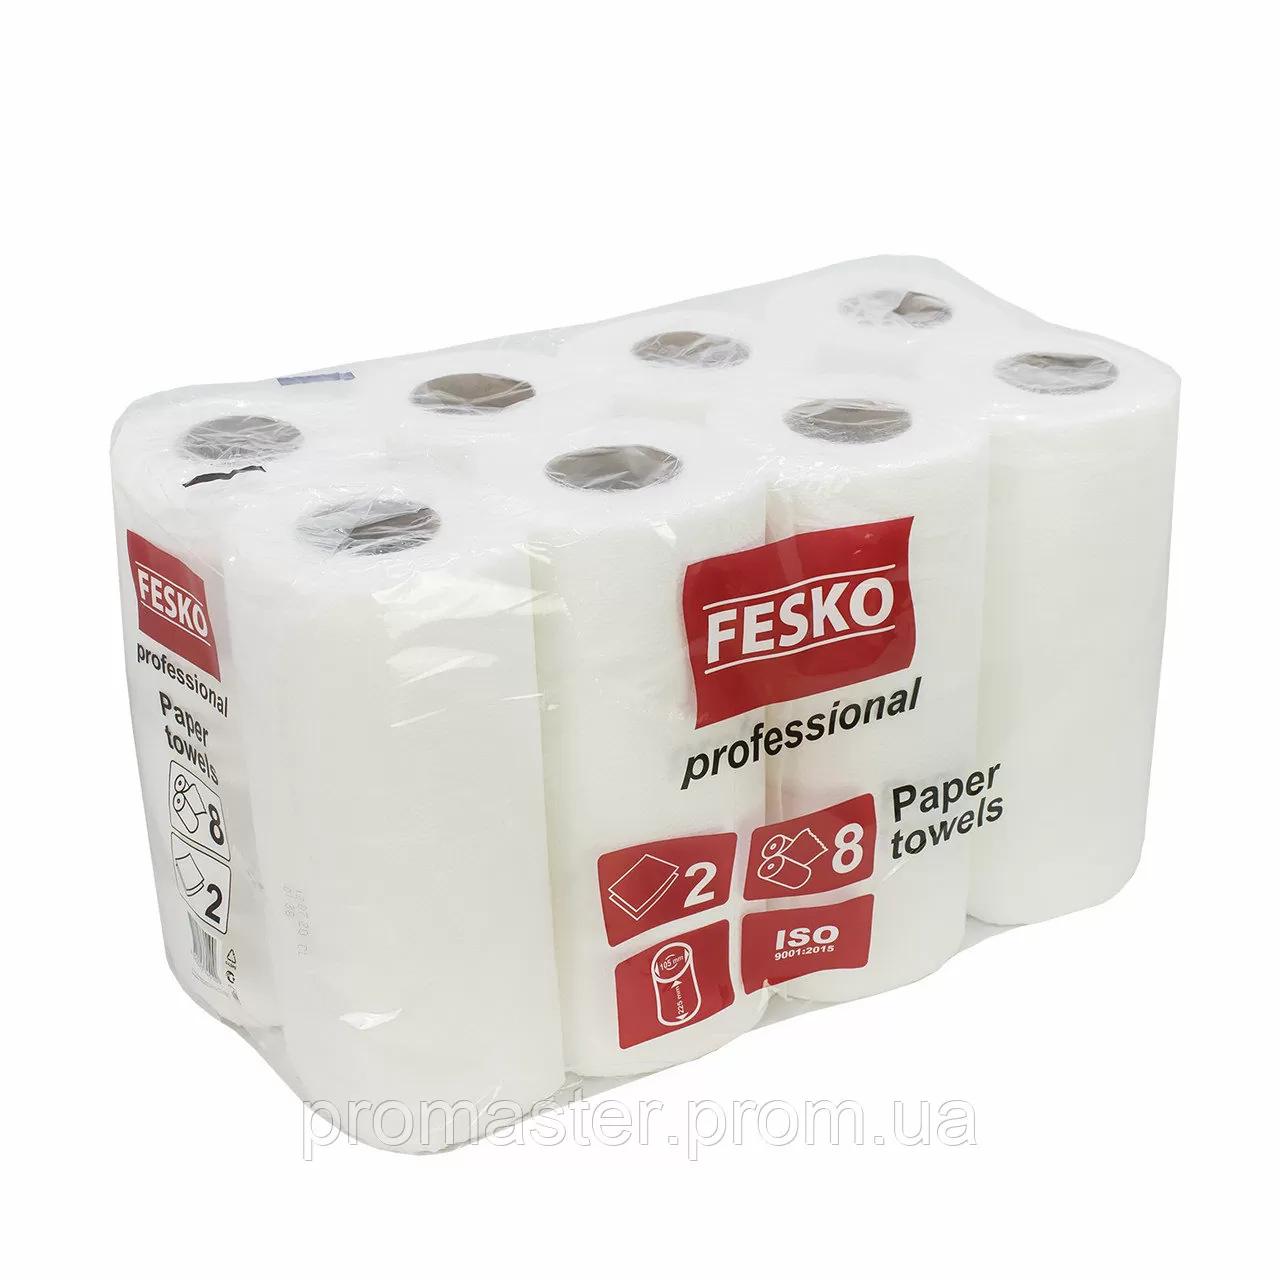 Бумажные полотенца "Fesko", 8 рулонов